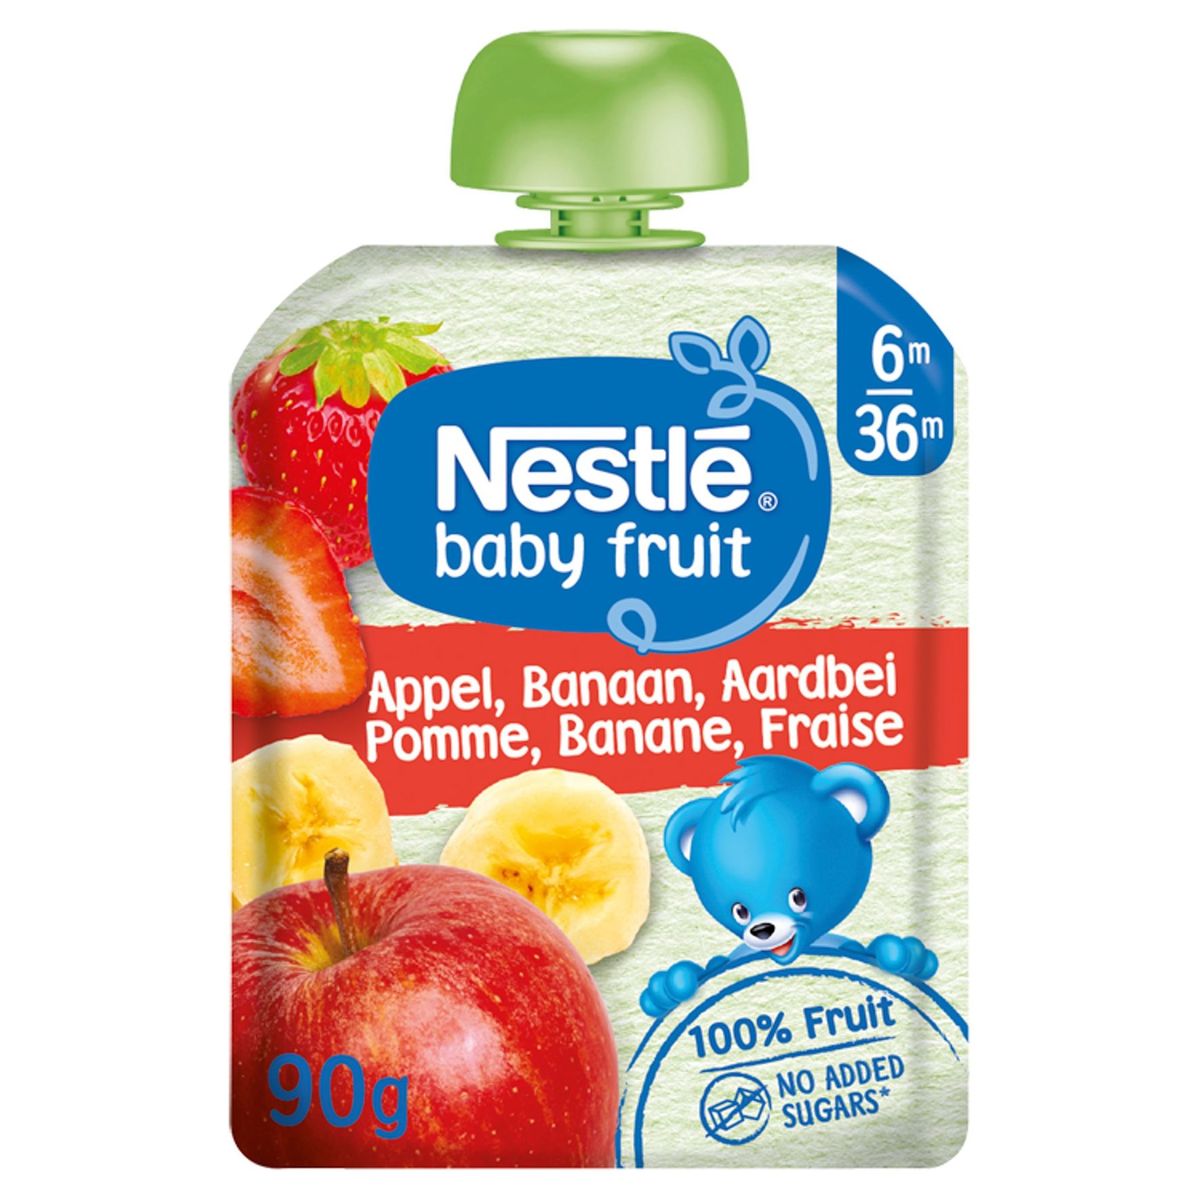 Nestlé Baby Fruit Appel, Banaan, Aardbei 6 - 36 Maanden 90 g